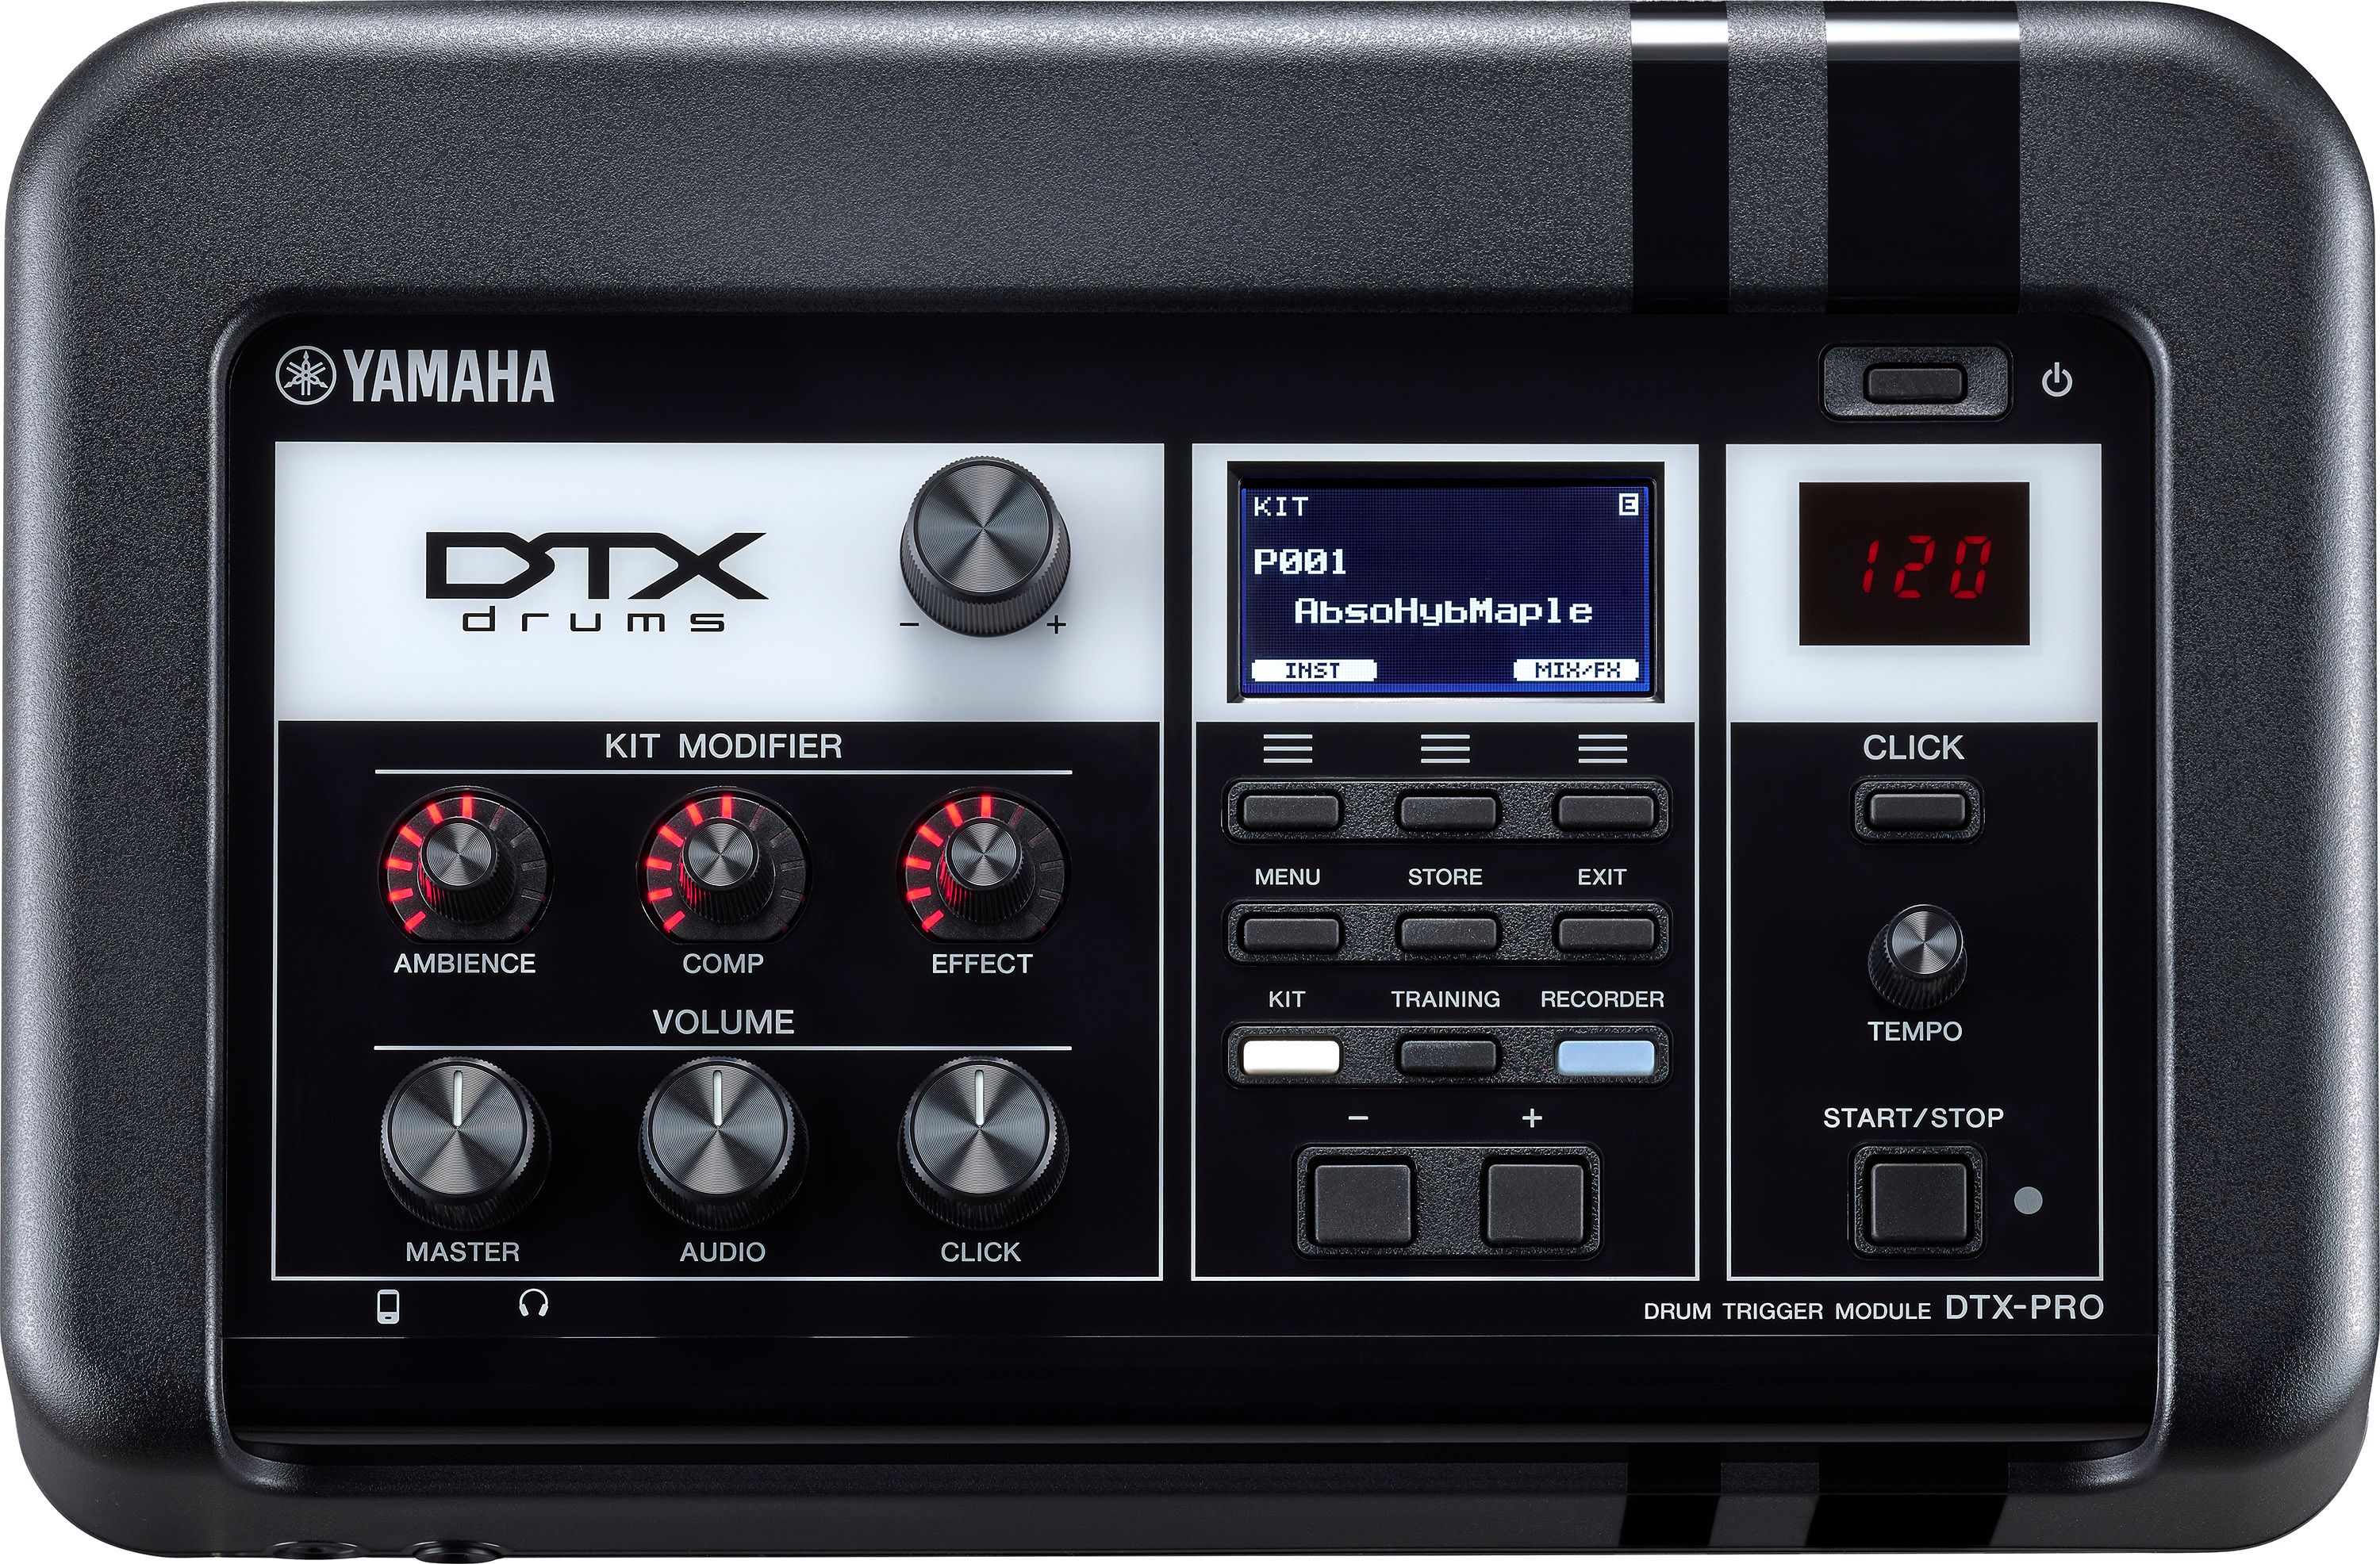 Yamaha Jdtx6 Kx Electronic Drum Kit - Batería electrónica completa - Variation 2